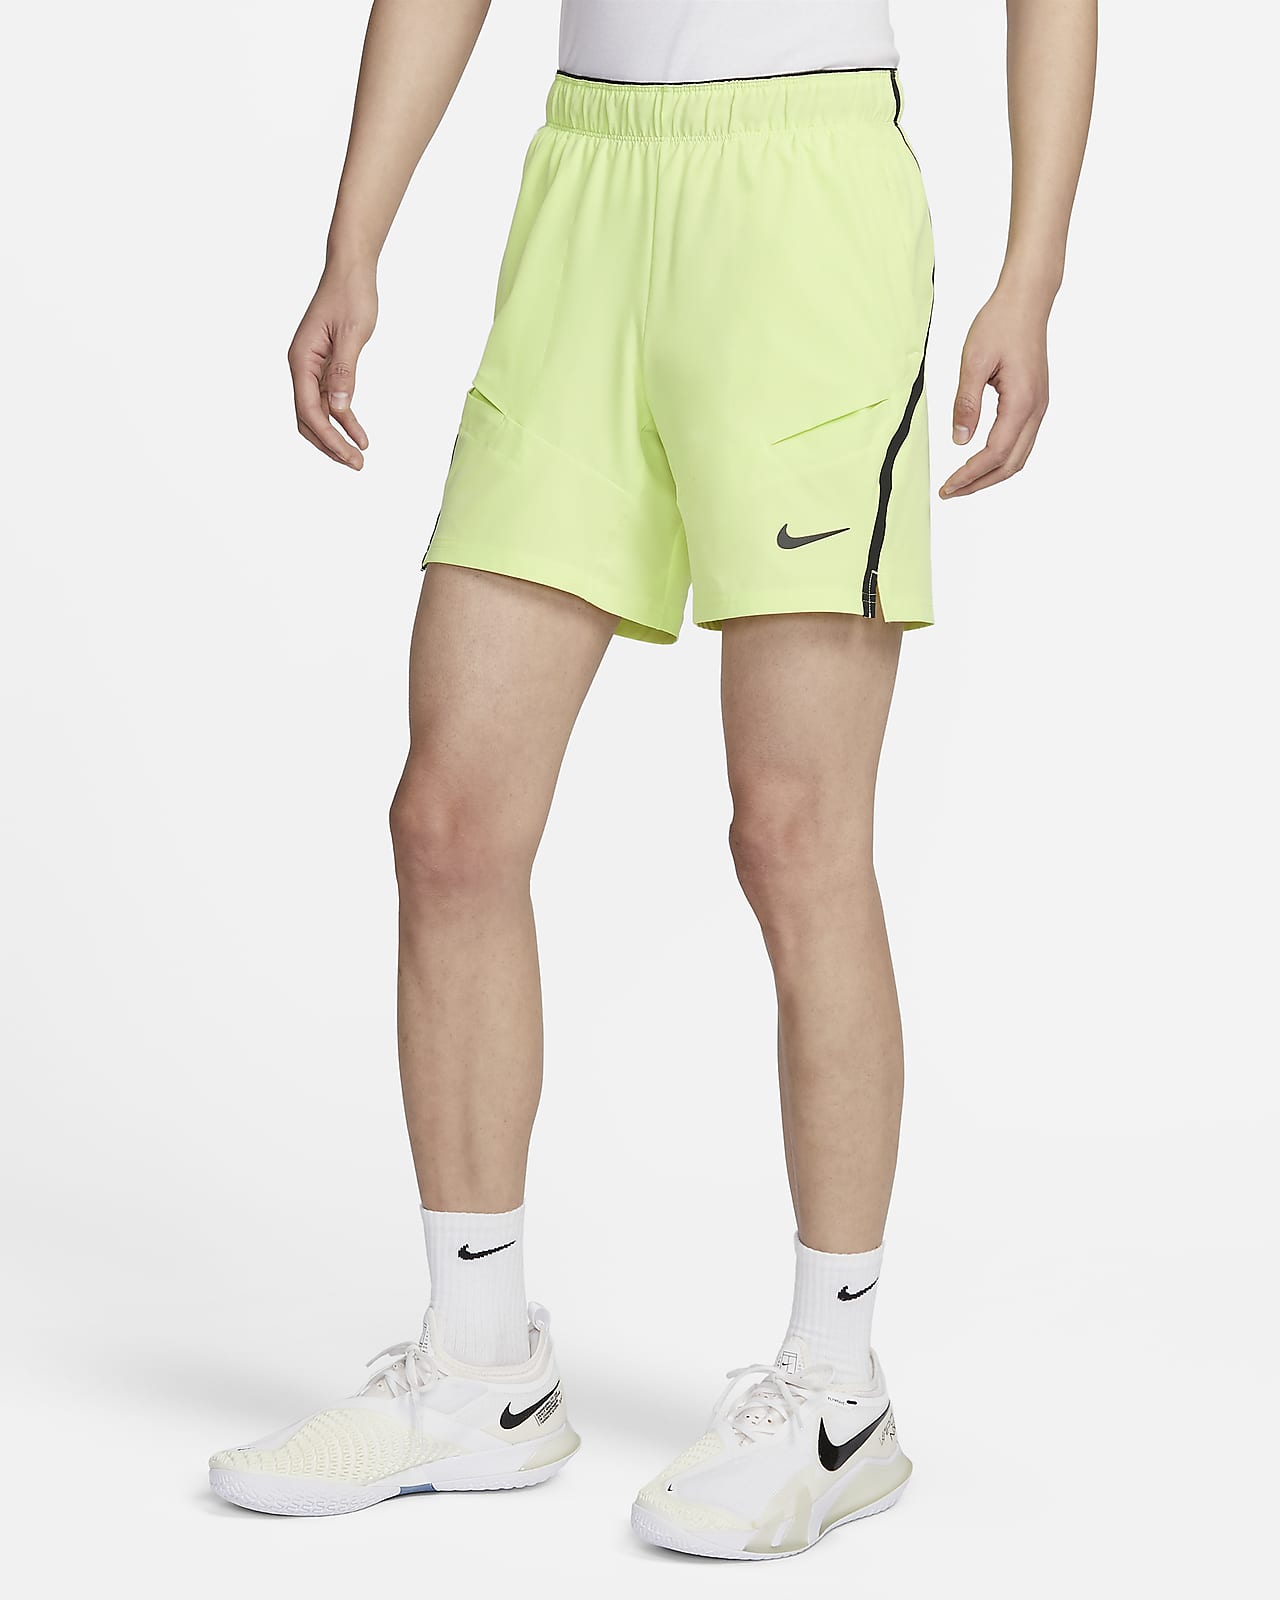 NikeCourt Advantage Dri-FIT 男子速干网球短裤